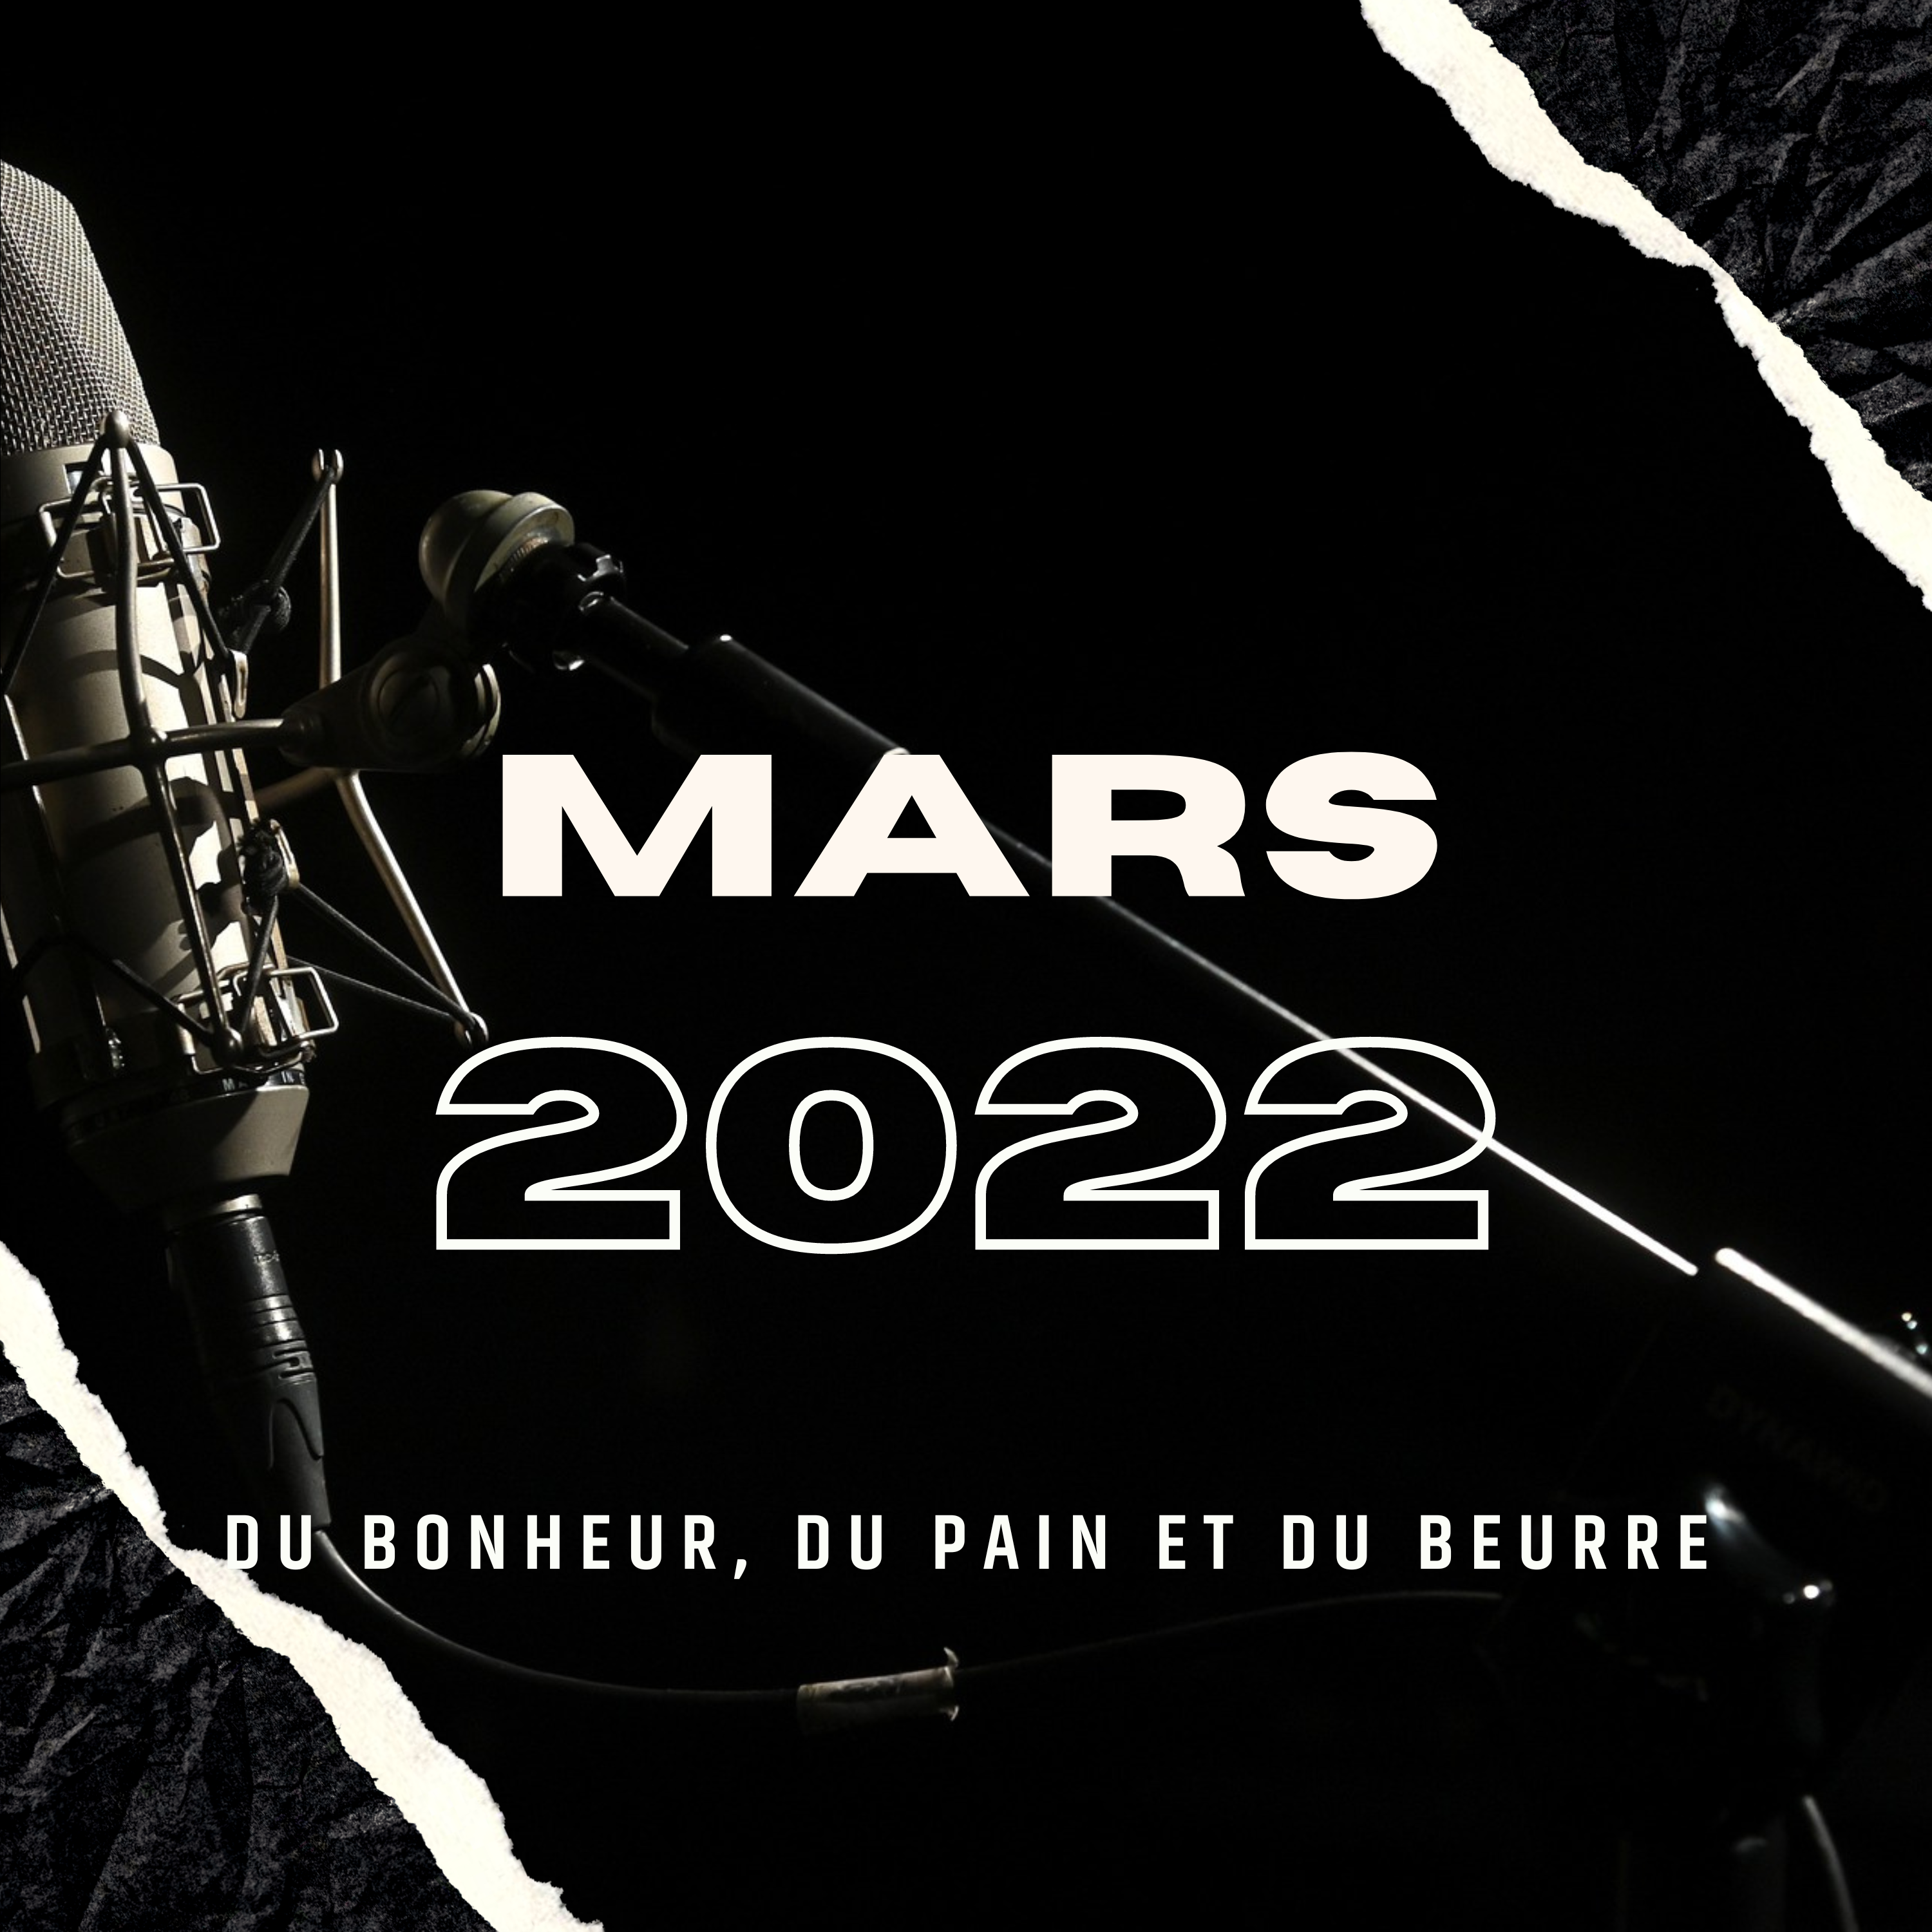 Mars 2022 — Du bonheur, du pain et du beurre